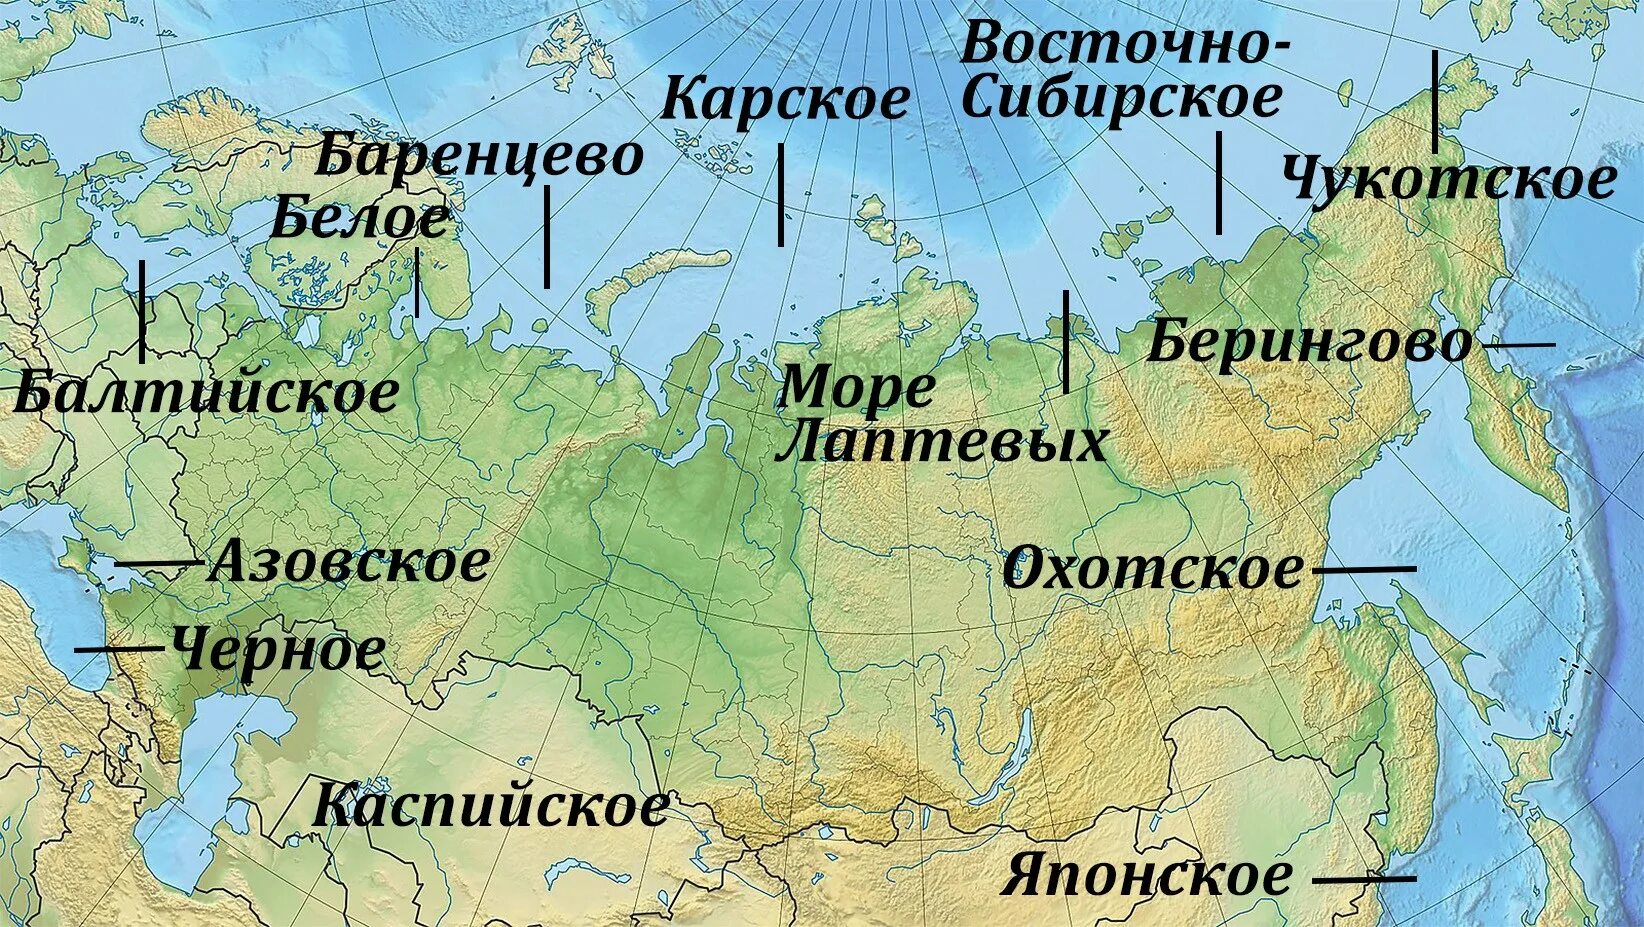 Моря и океаны омывающие Россию на карте. Моря омывающие Россию. Моря России на карте. Моря омывающие Россию на карте.